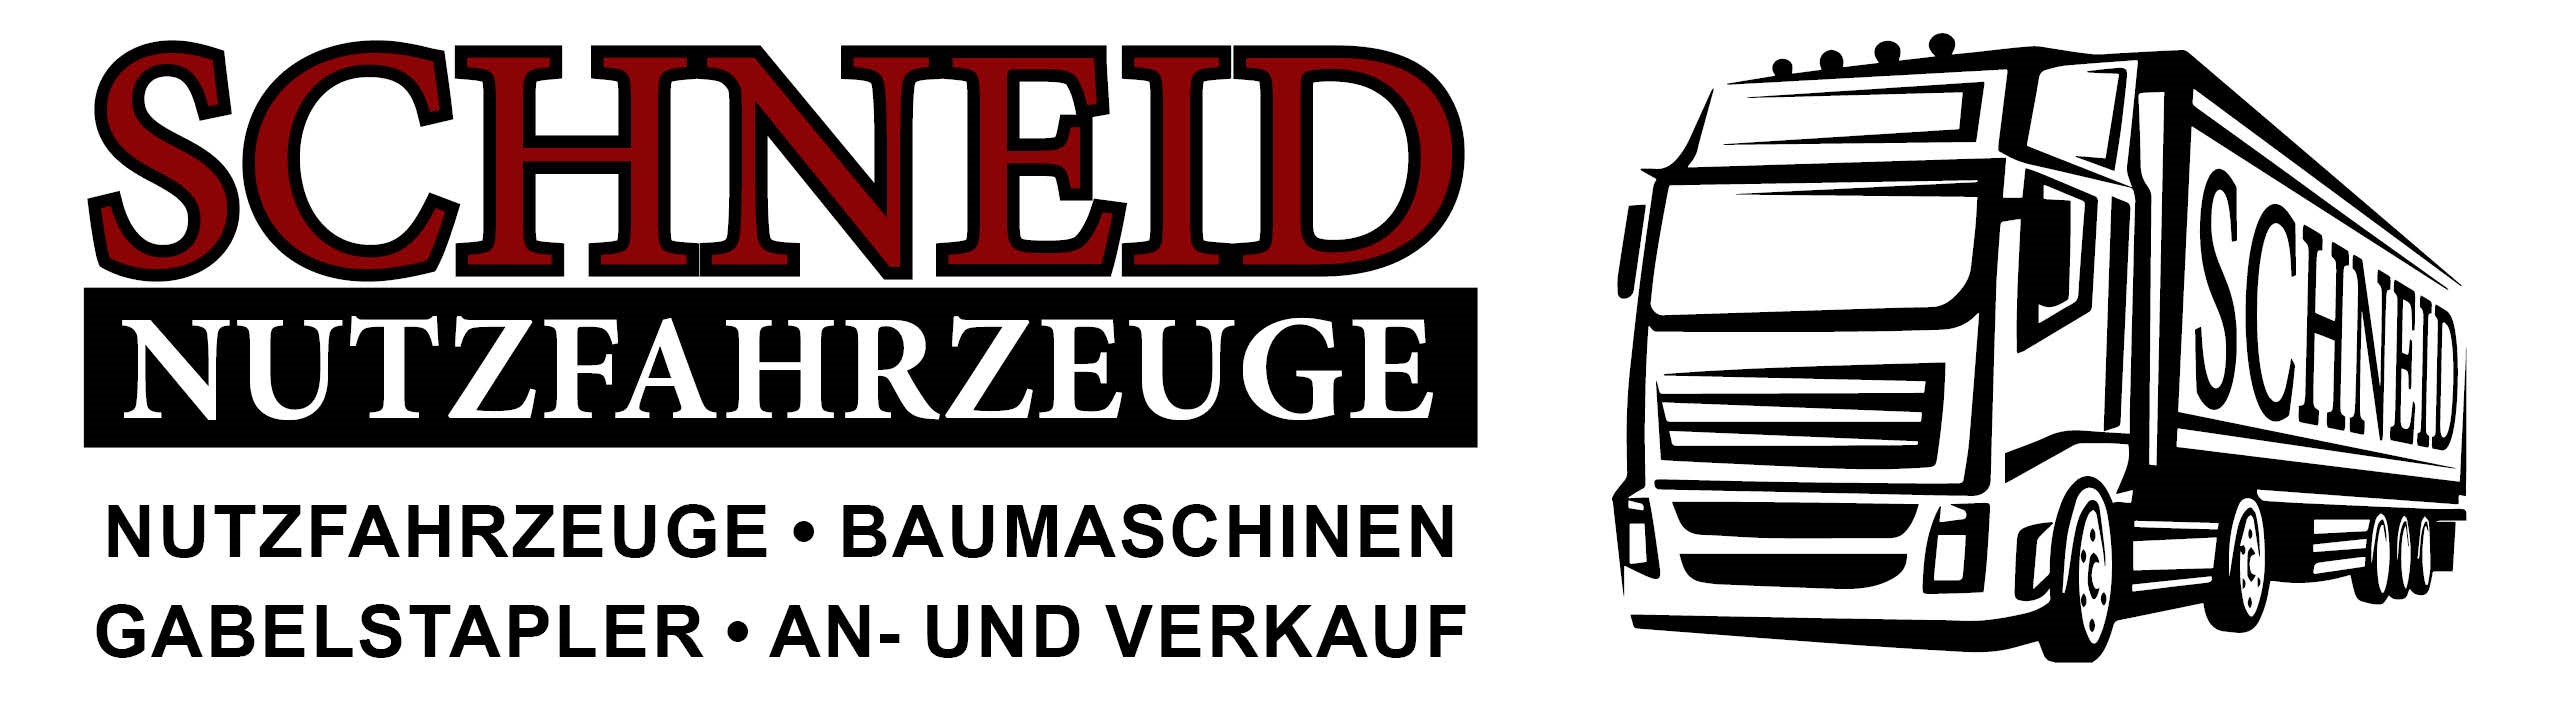 Schneid Nutzfahrzeuge GmbH & Co.KG